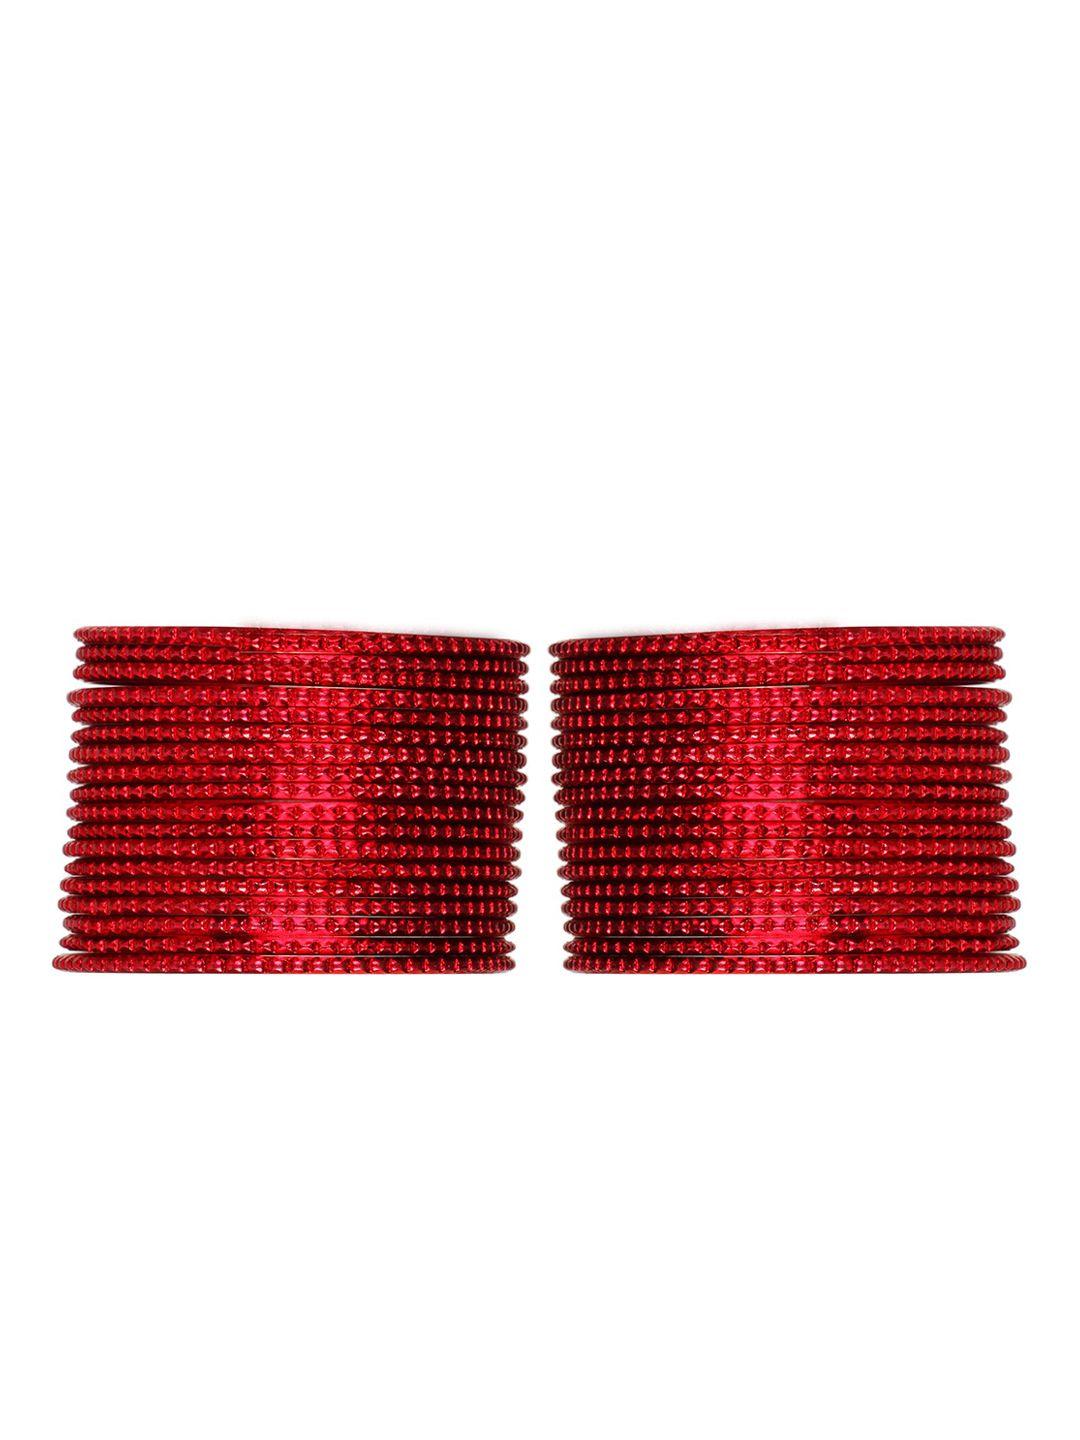 arendelle set of 36 red metal bangles